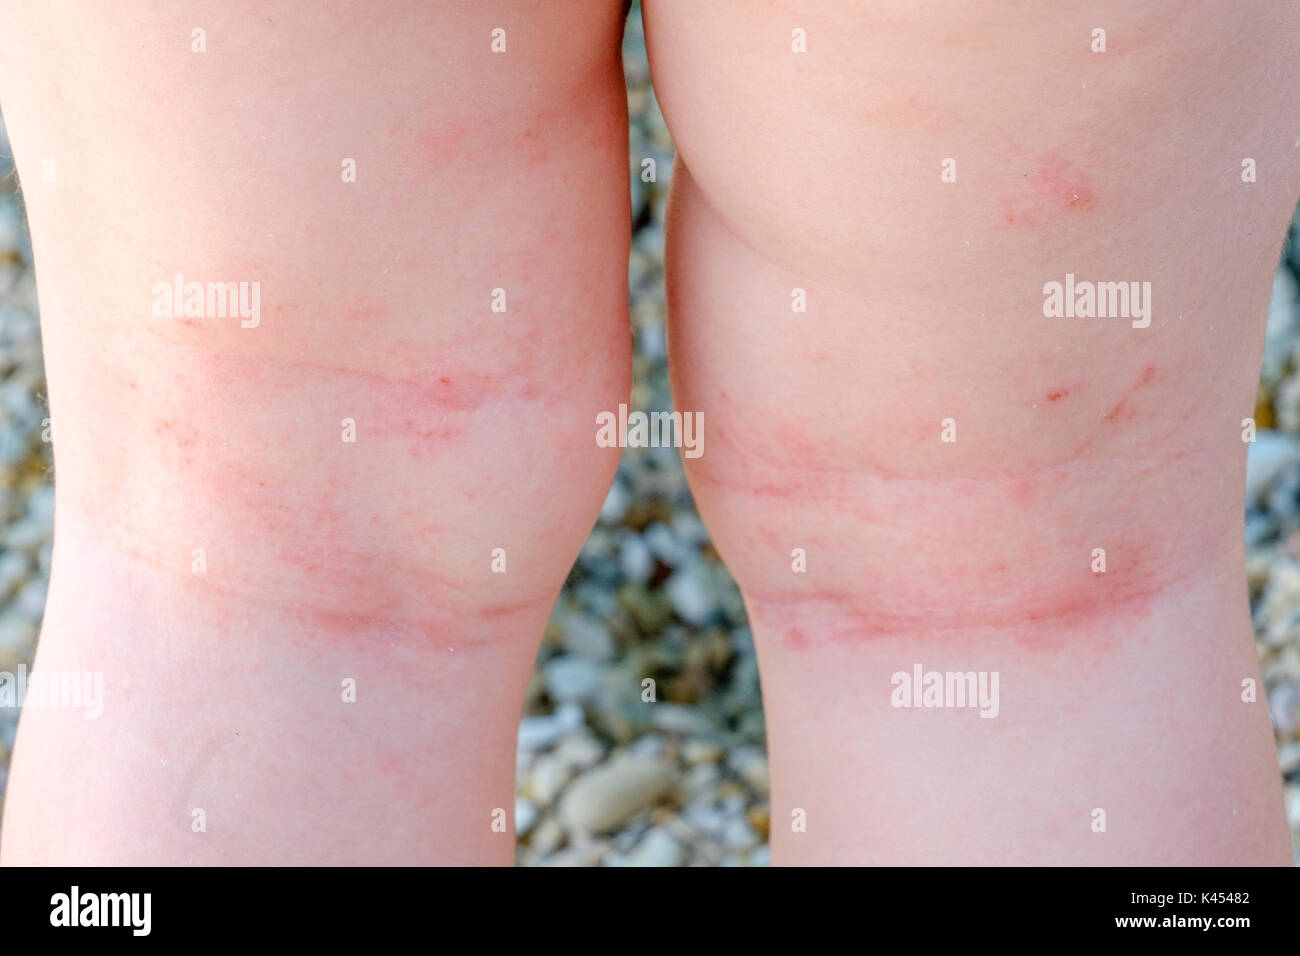 La irritación de la piel del recién nacido la dermatitis atópica closeup piernas arañazos Foto de stock